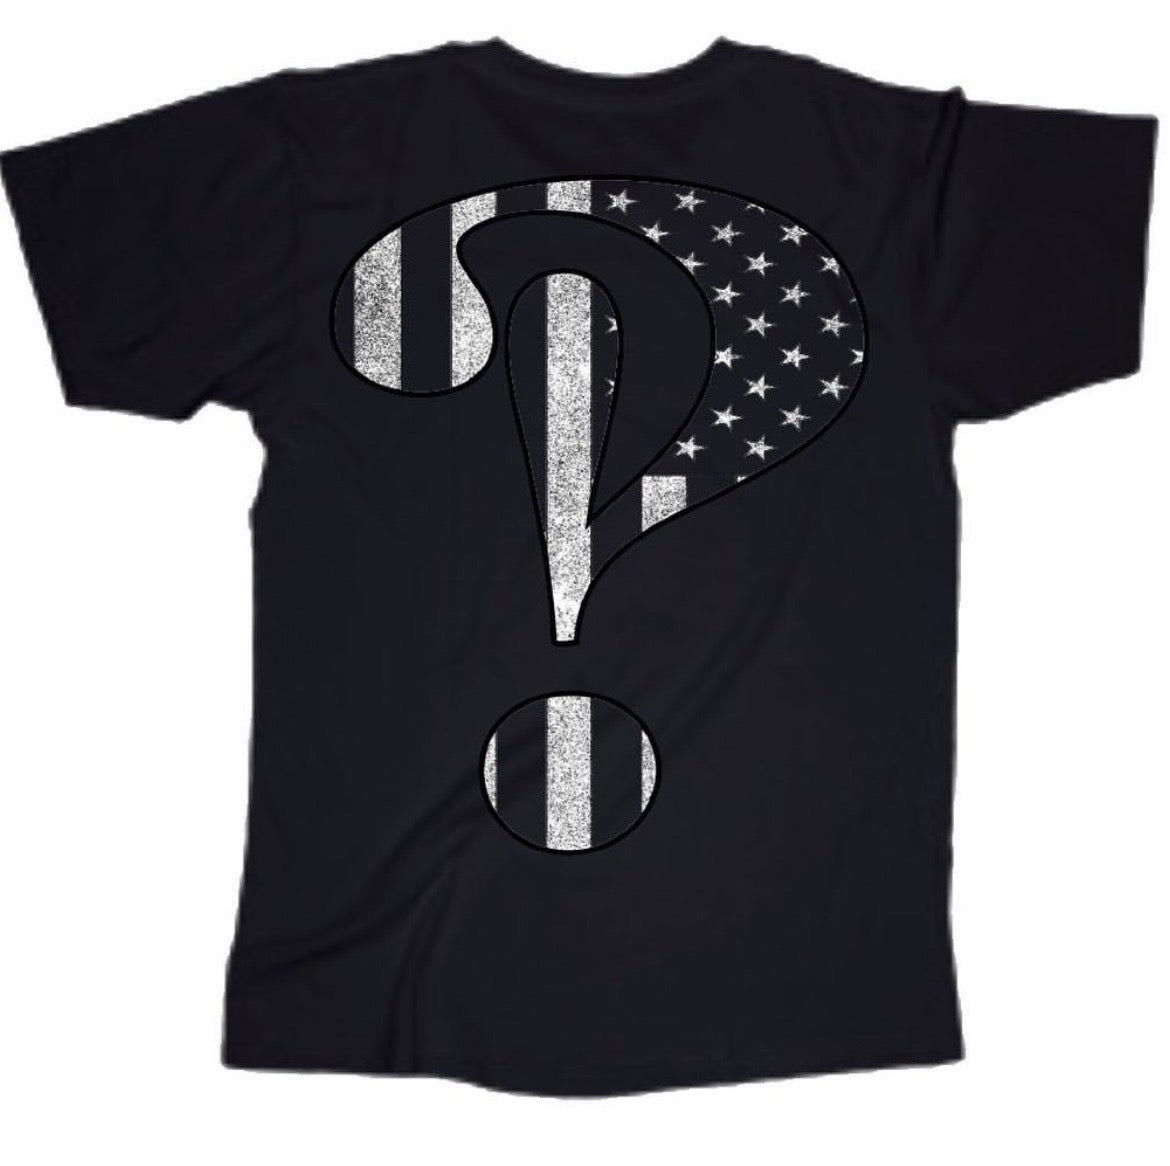 (Nothing Free Logo) T-Shirt 'Black'